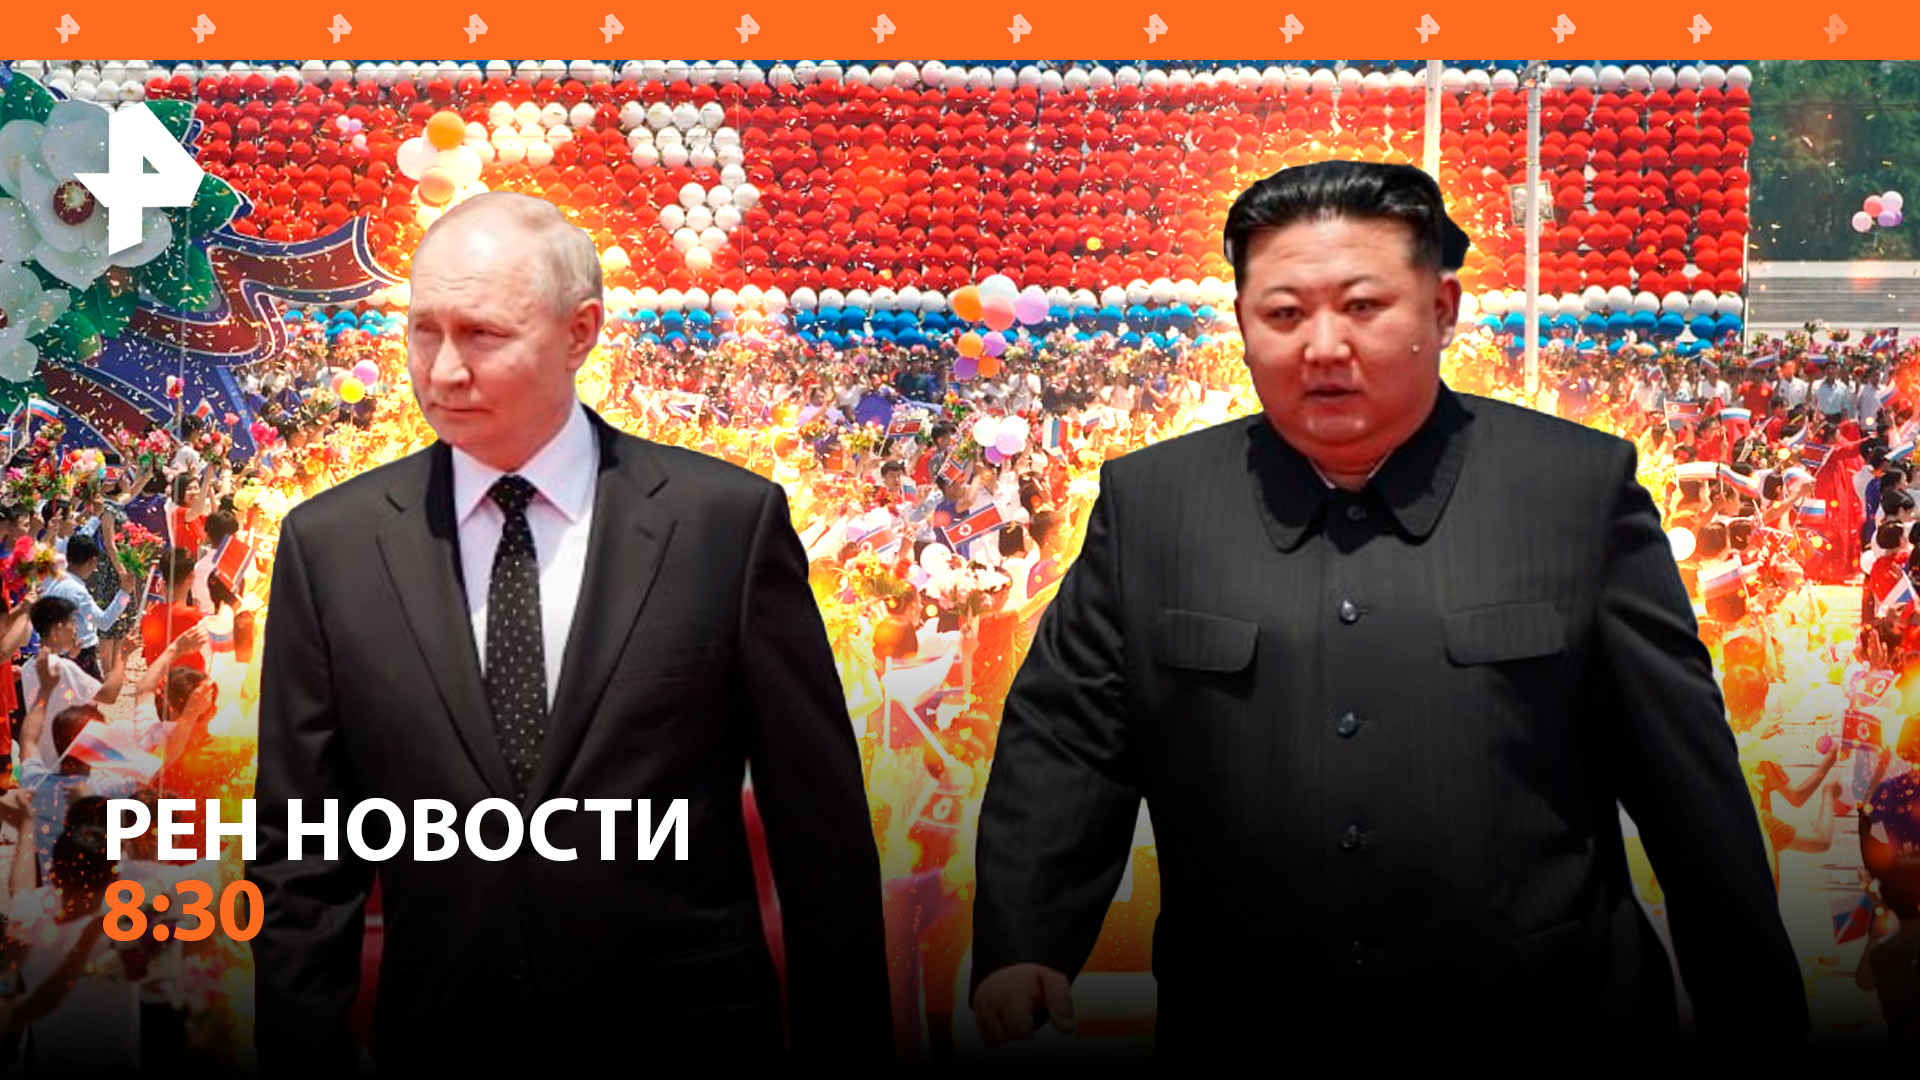 Встреча лидеров России и КНДР в Пхеньяне / Израиль готов к войне с Ливаном / РЕН Новости 8:30 19.06